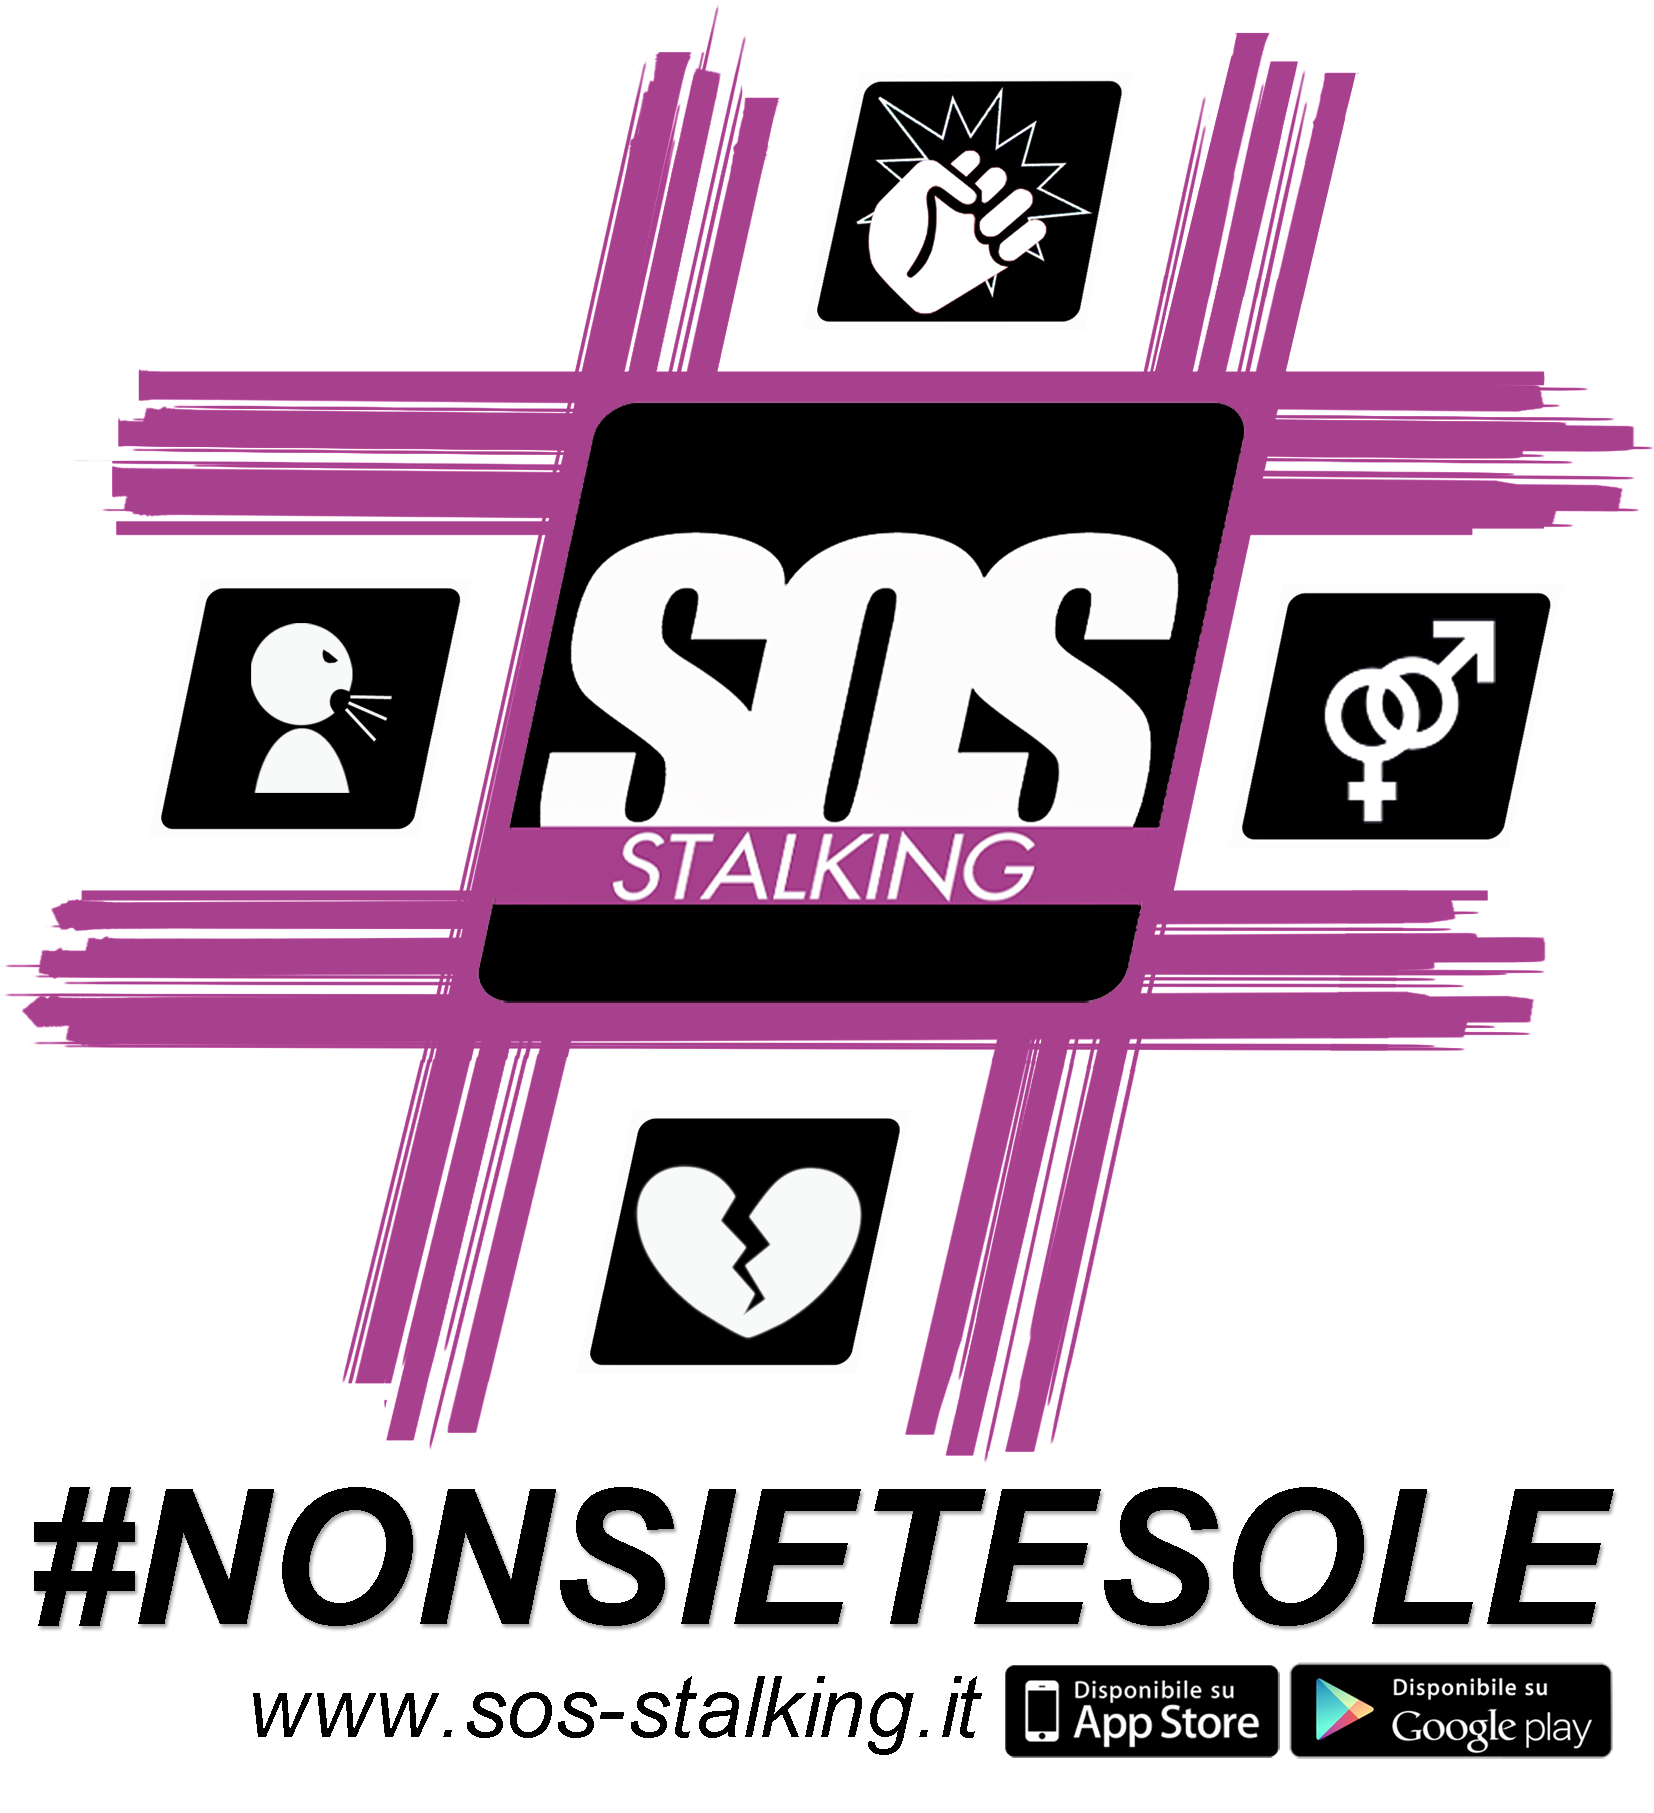 Sos Stalking: arriva un'app in soccorso delle vittime di violenza